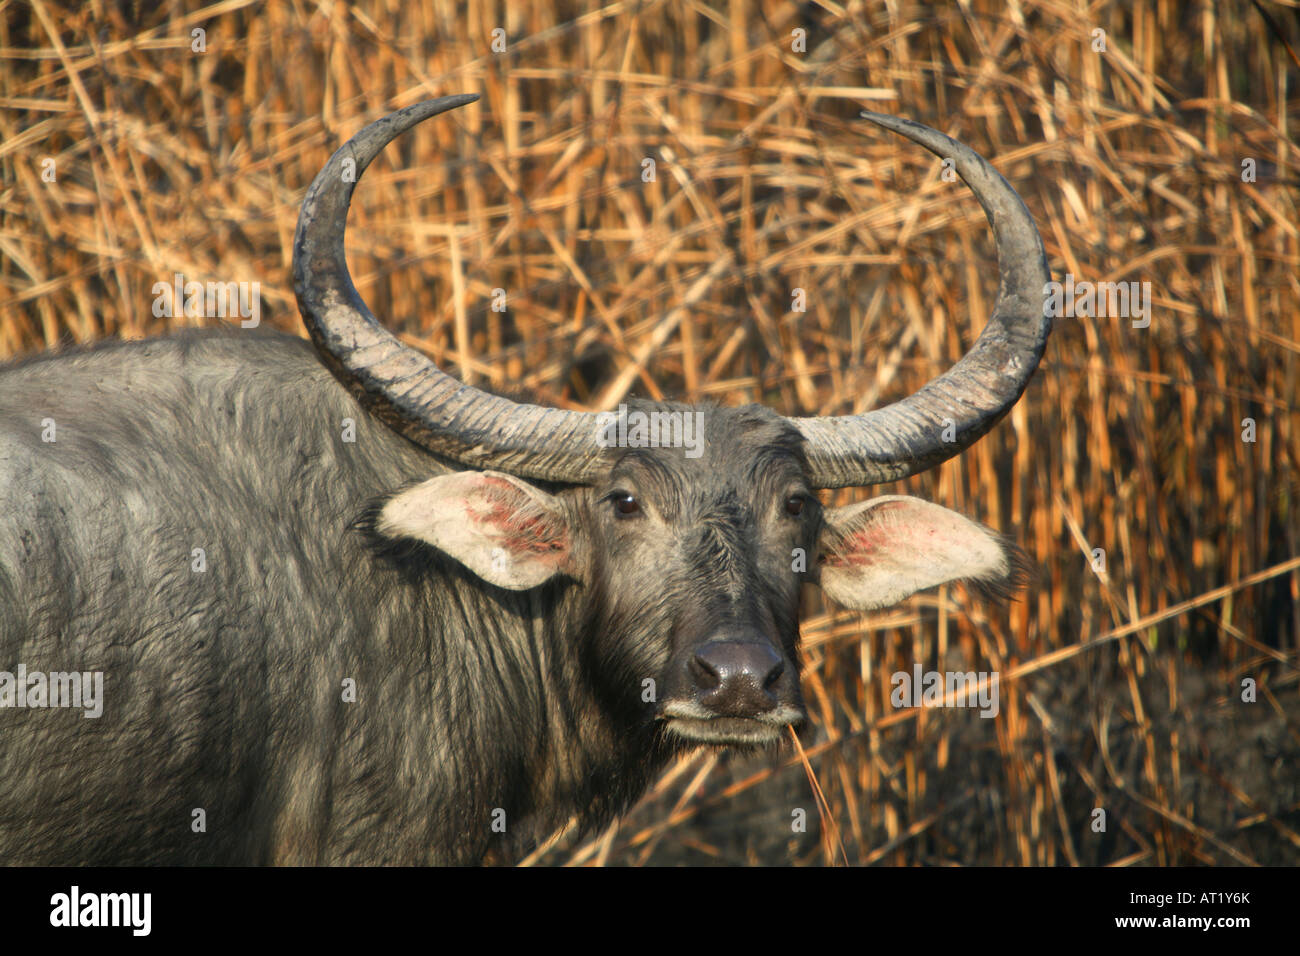 Wild Baffalo, Bubalus arnee, at Kaziranga National Park, Assam, India. Stock Photo